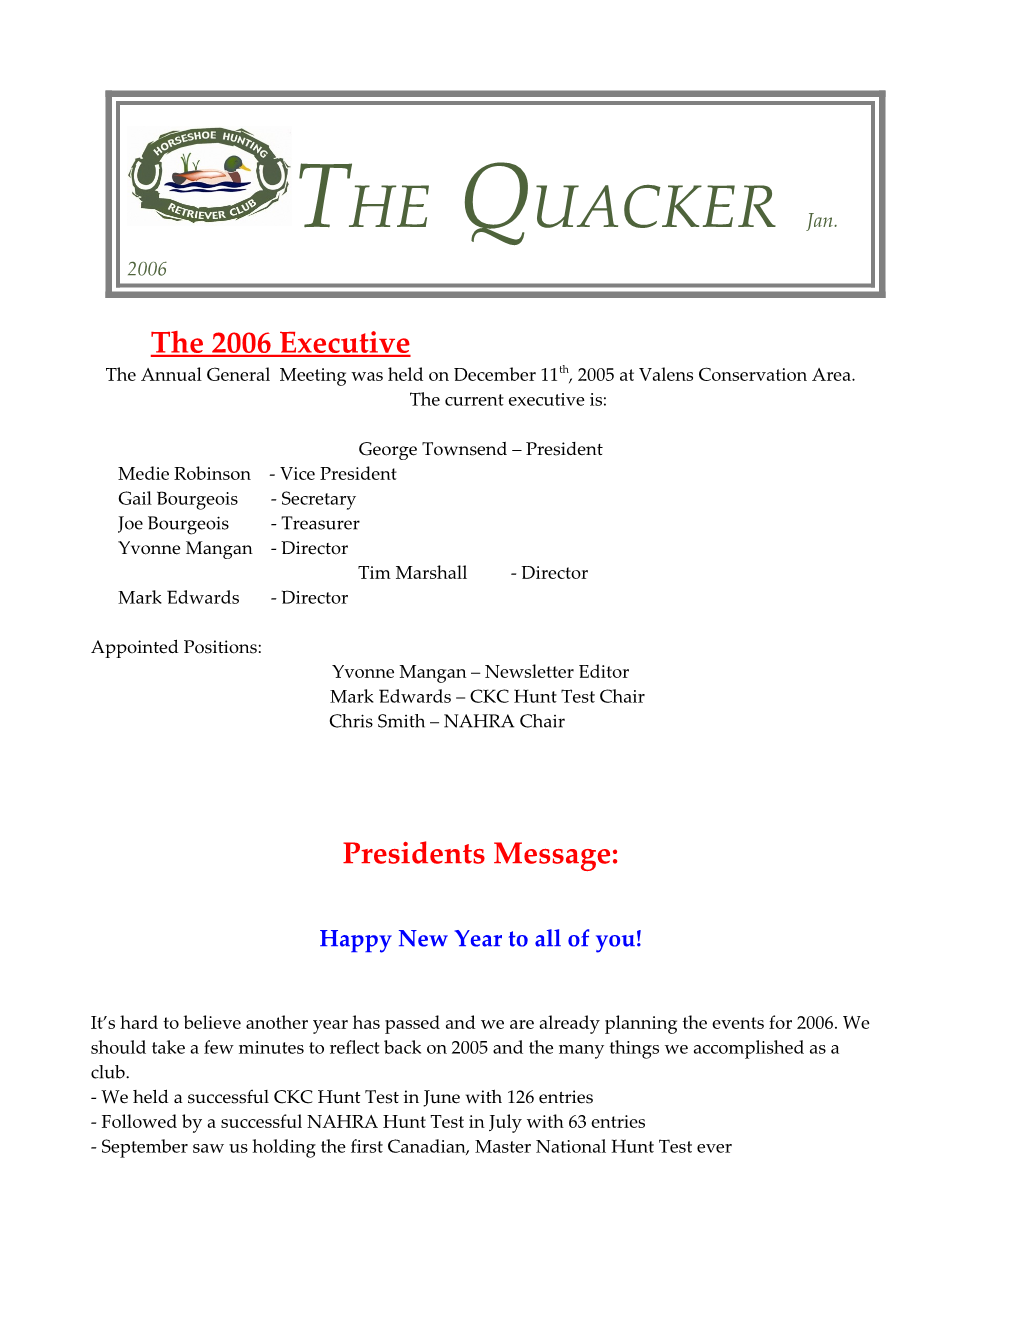 THE QUACKER Feb